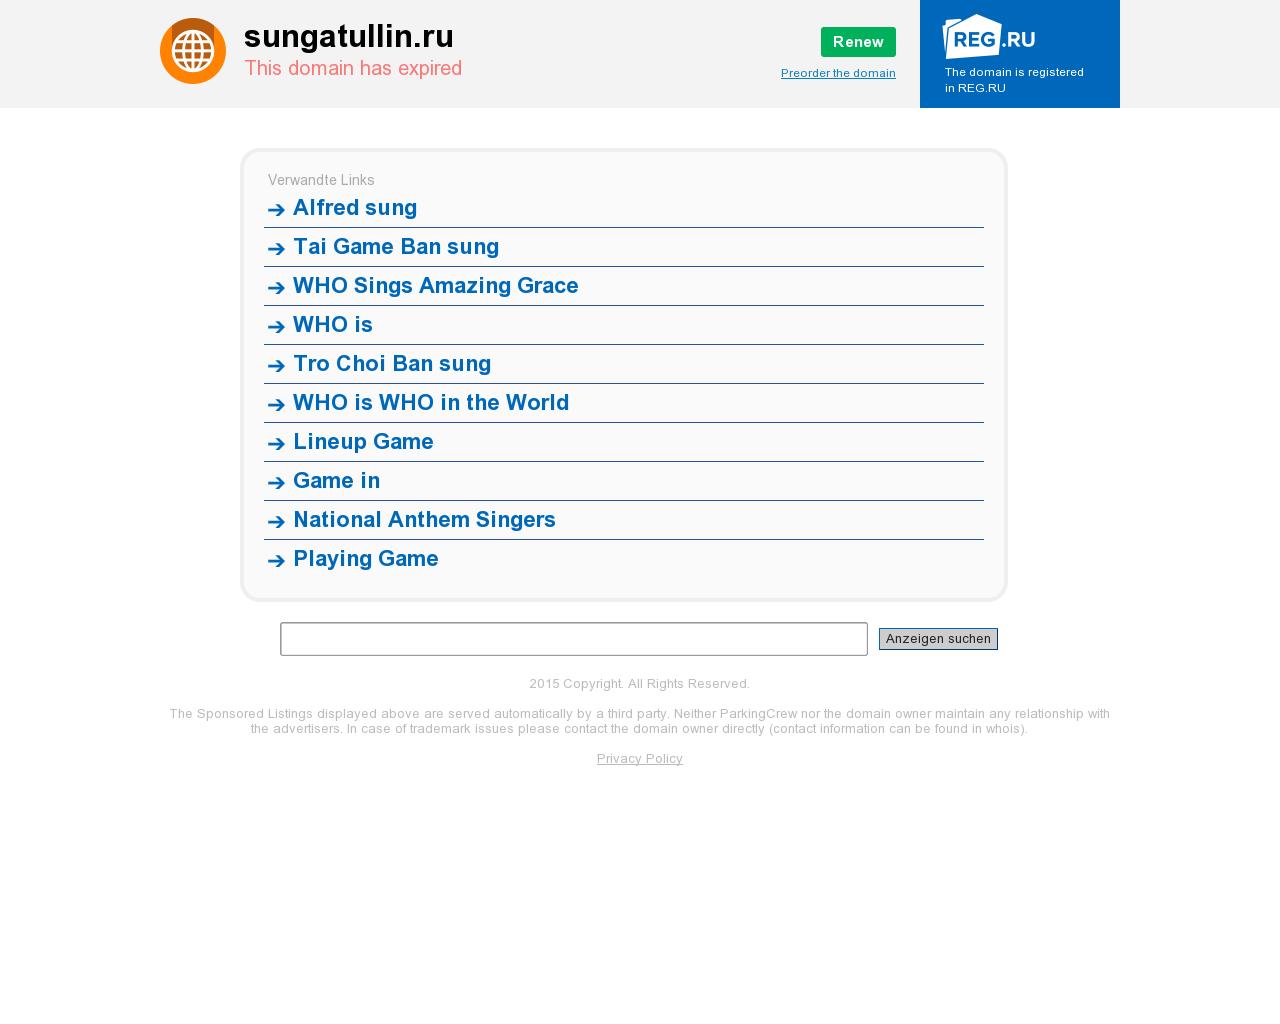 Изображение сайта sungatullin.ru в разрешении 1280x1024